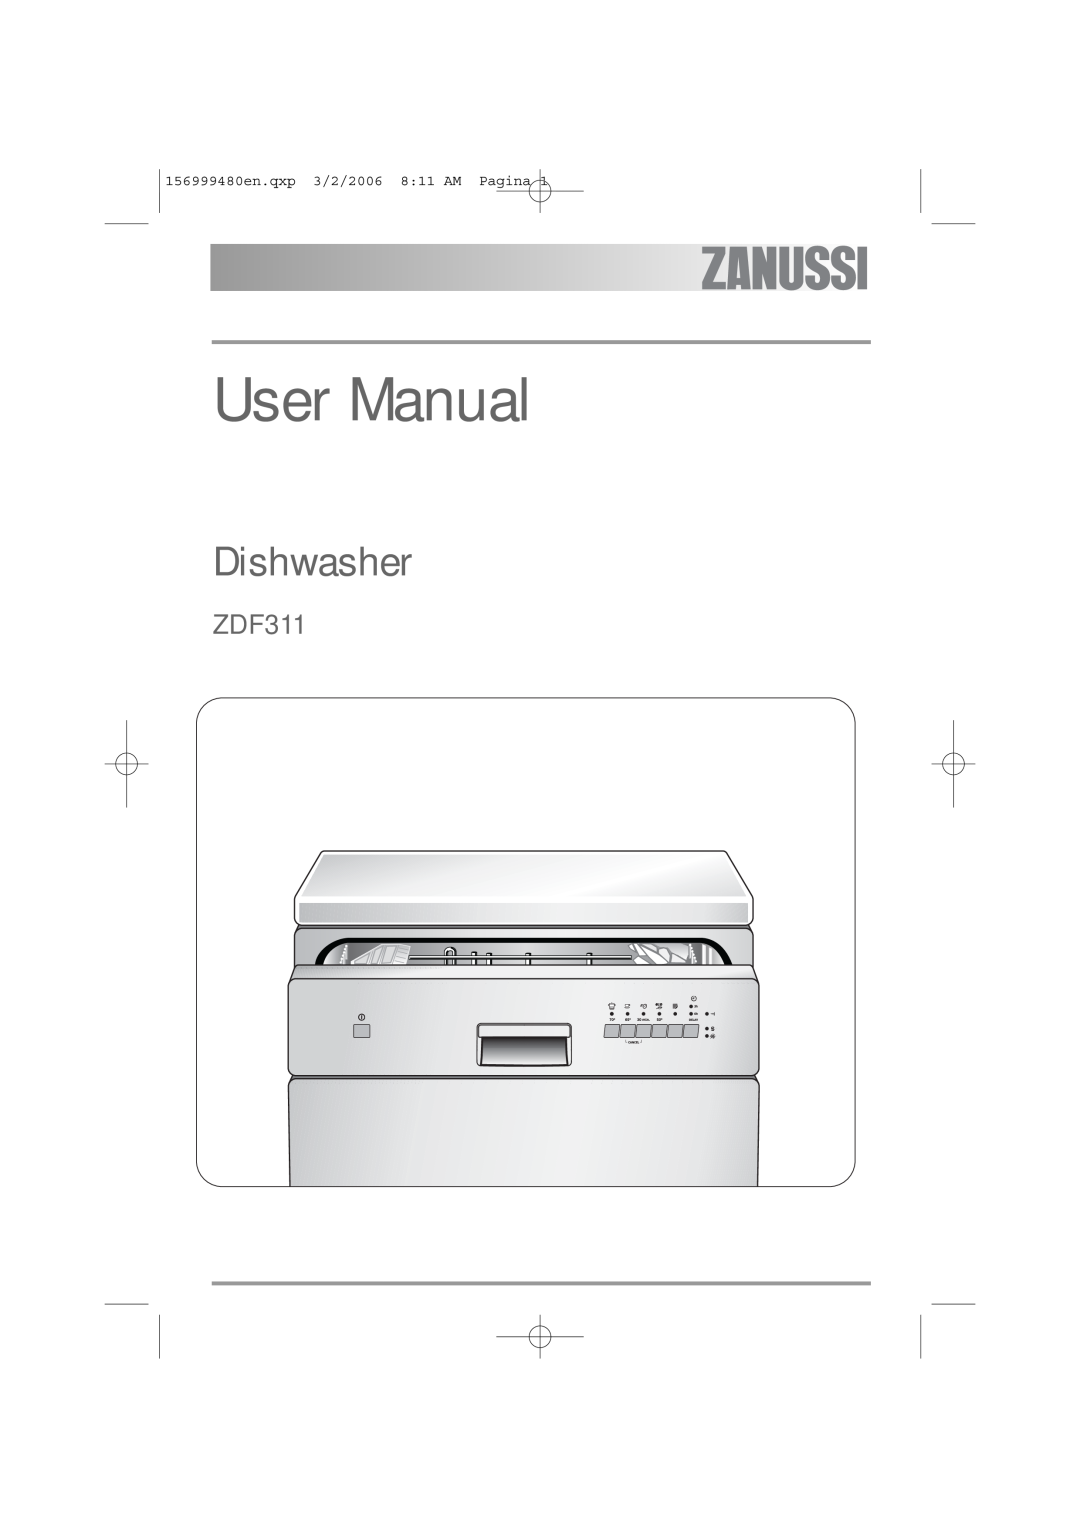 Zanussi ZDF311 user manual User Manual, Dishwasher, 156999480en.qxp 3/2/2006 811 AM Pagina 